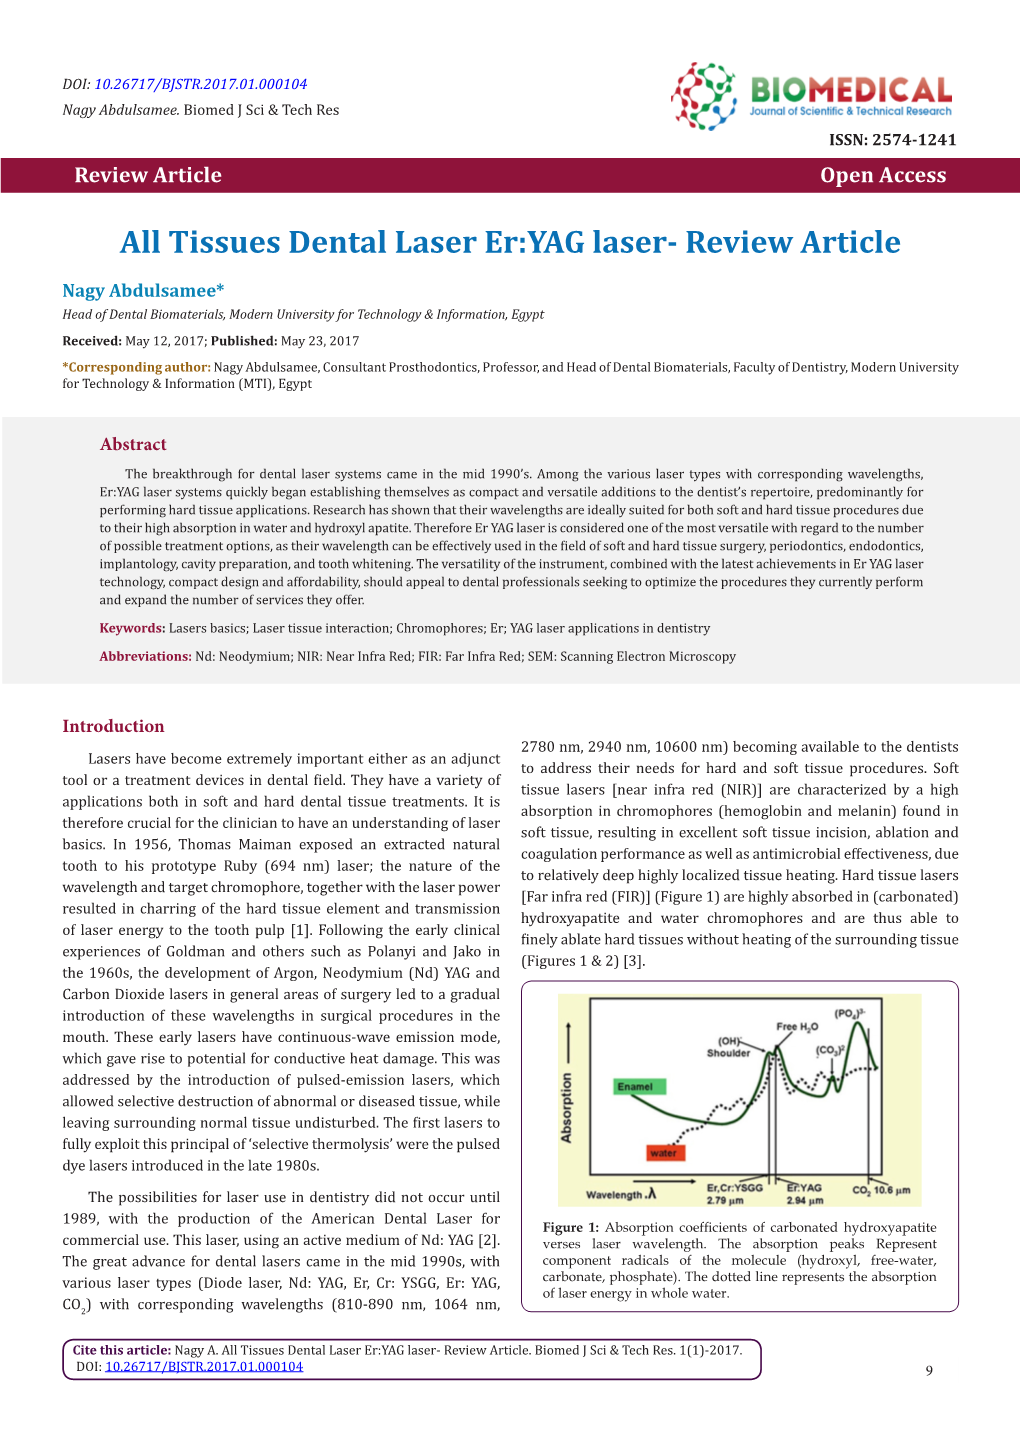 Tissues Dental Laser Er:YAG Laser- Review Article